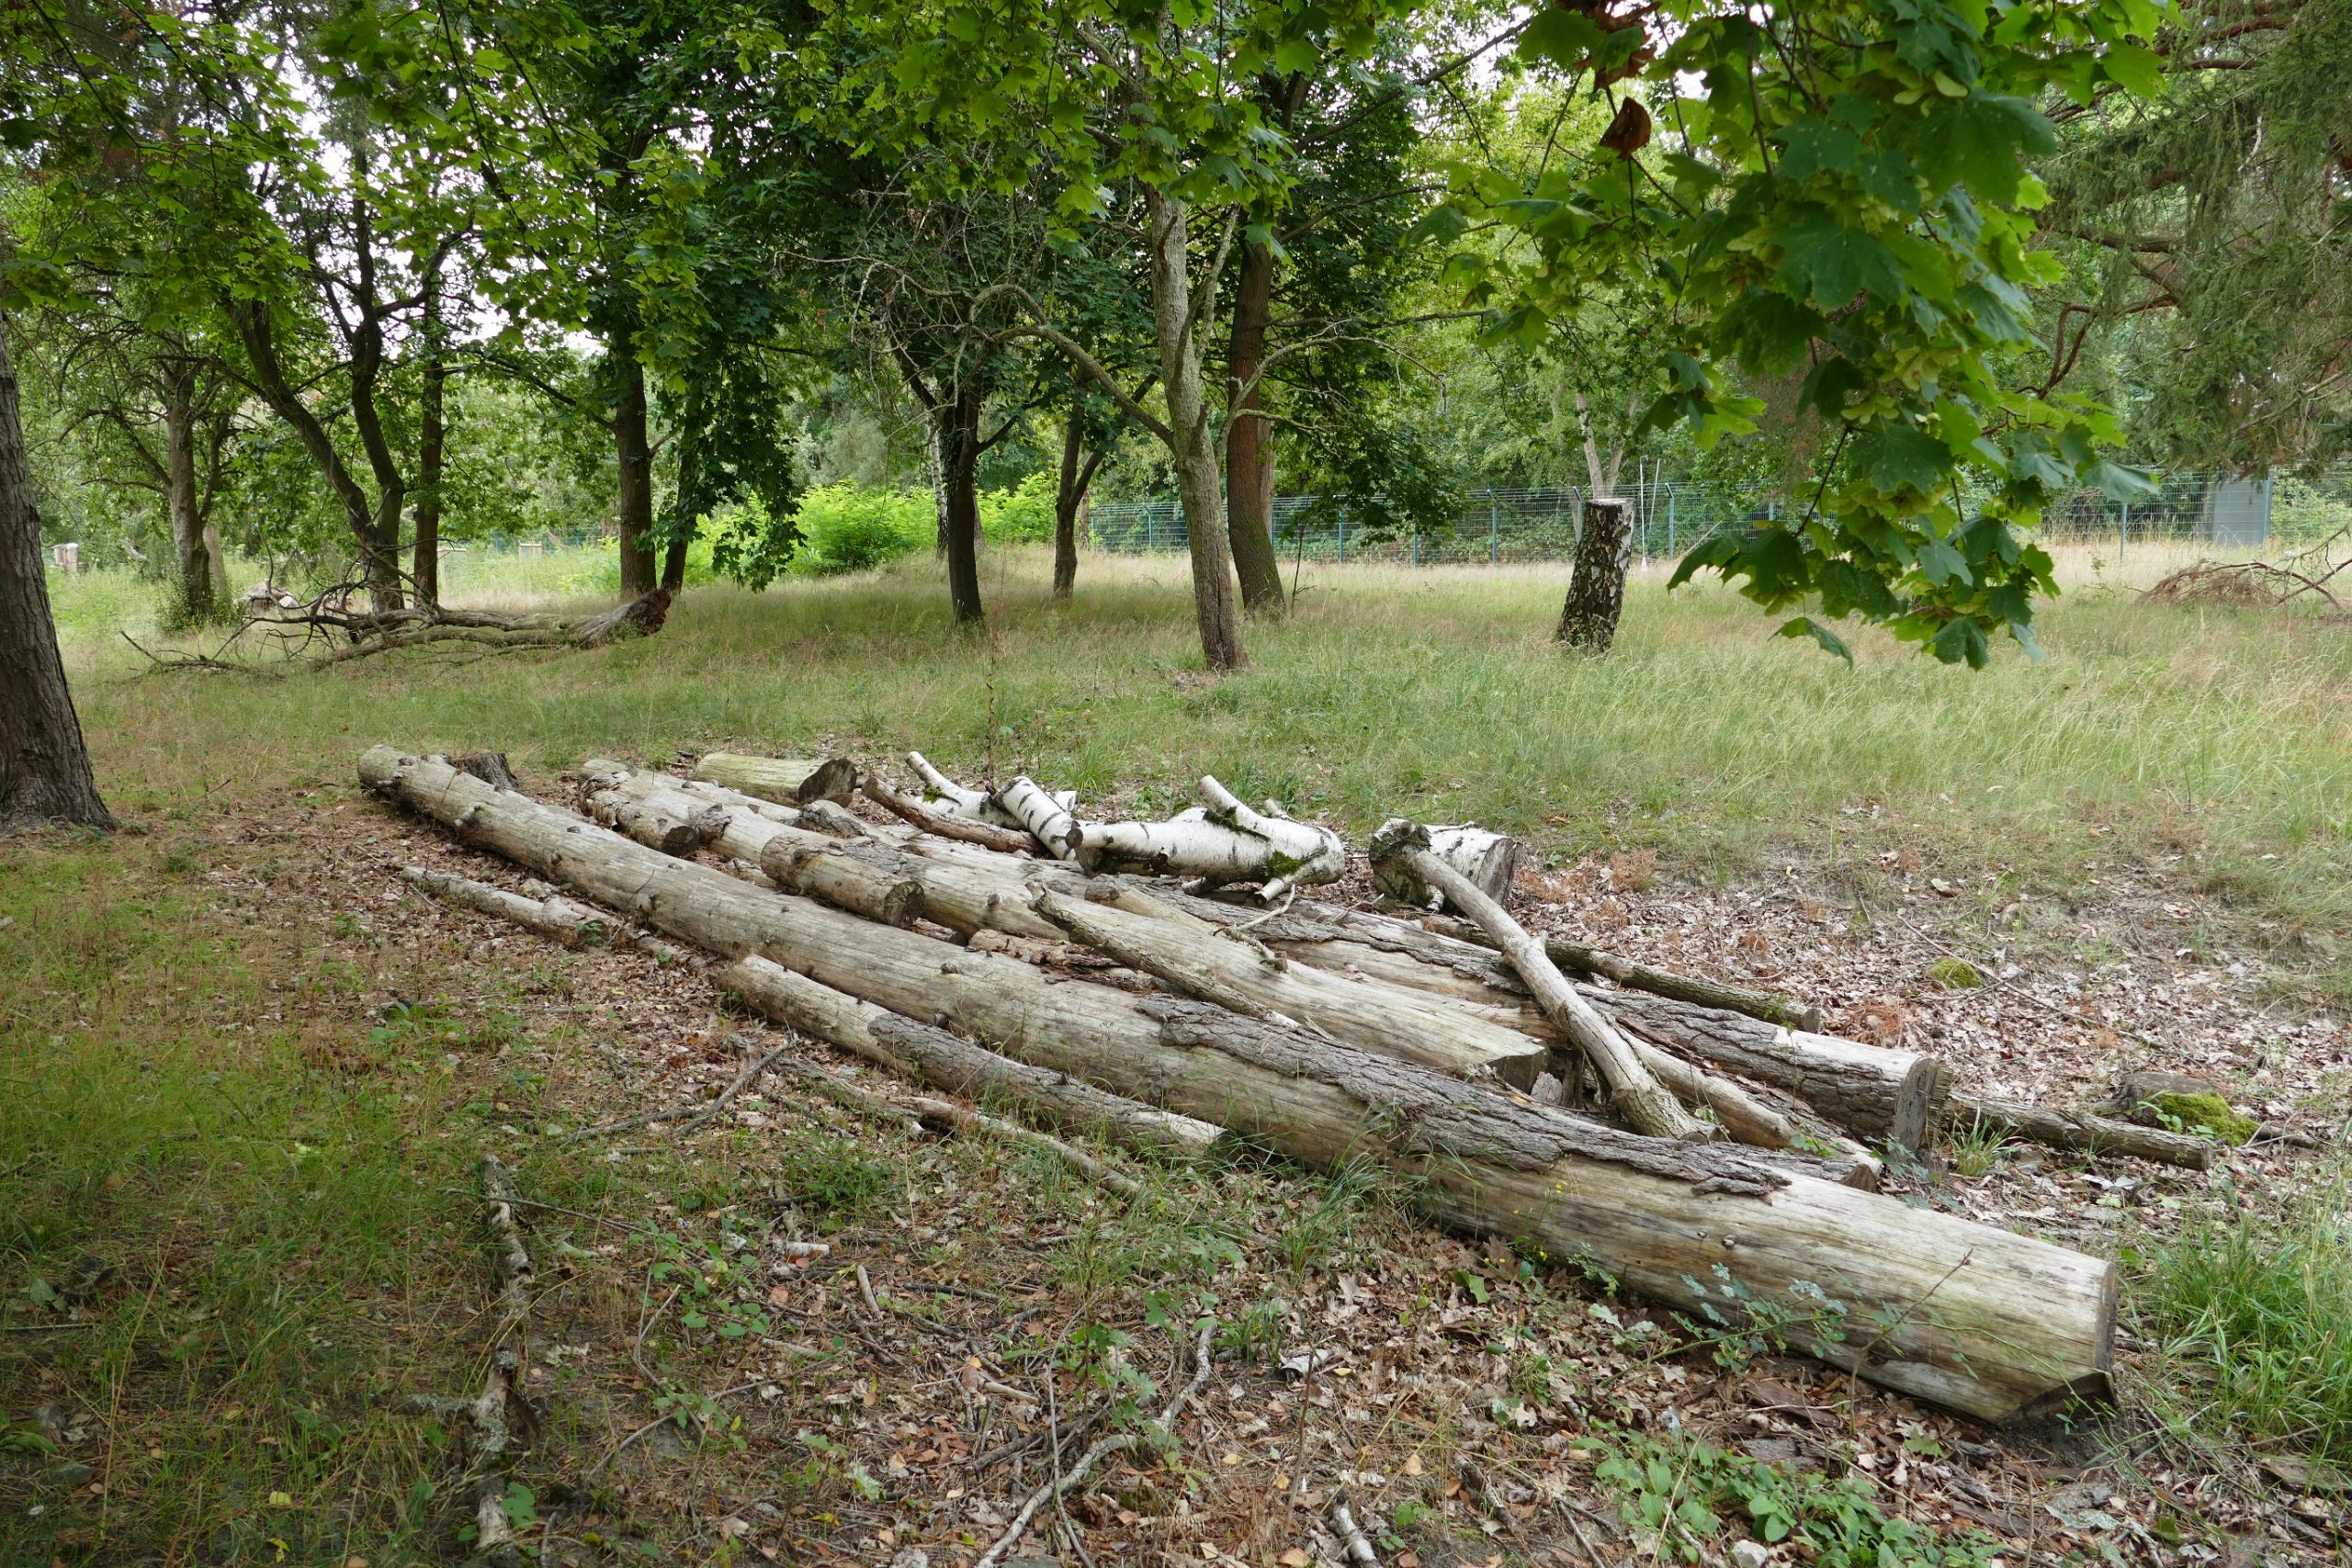 Ein Totholzhaufen aus alten Baumstämmen ist Nahrung für Pilze, Käfer und Insekten, die das Holz nach und nach zersetzen. Der ökologische Kreislauf schließt sich.